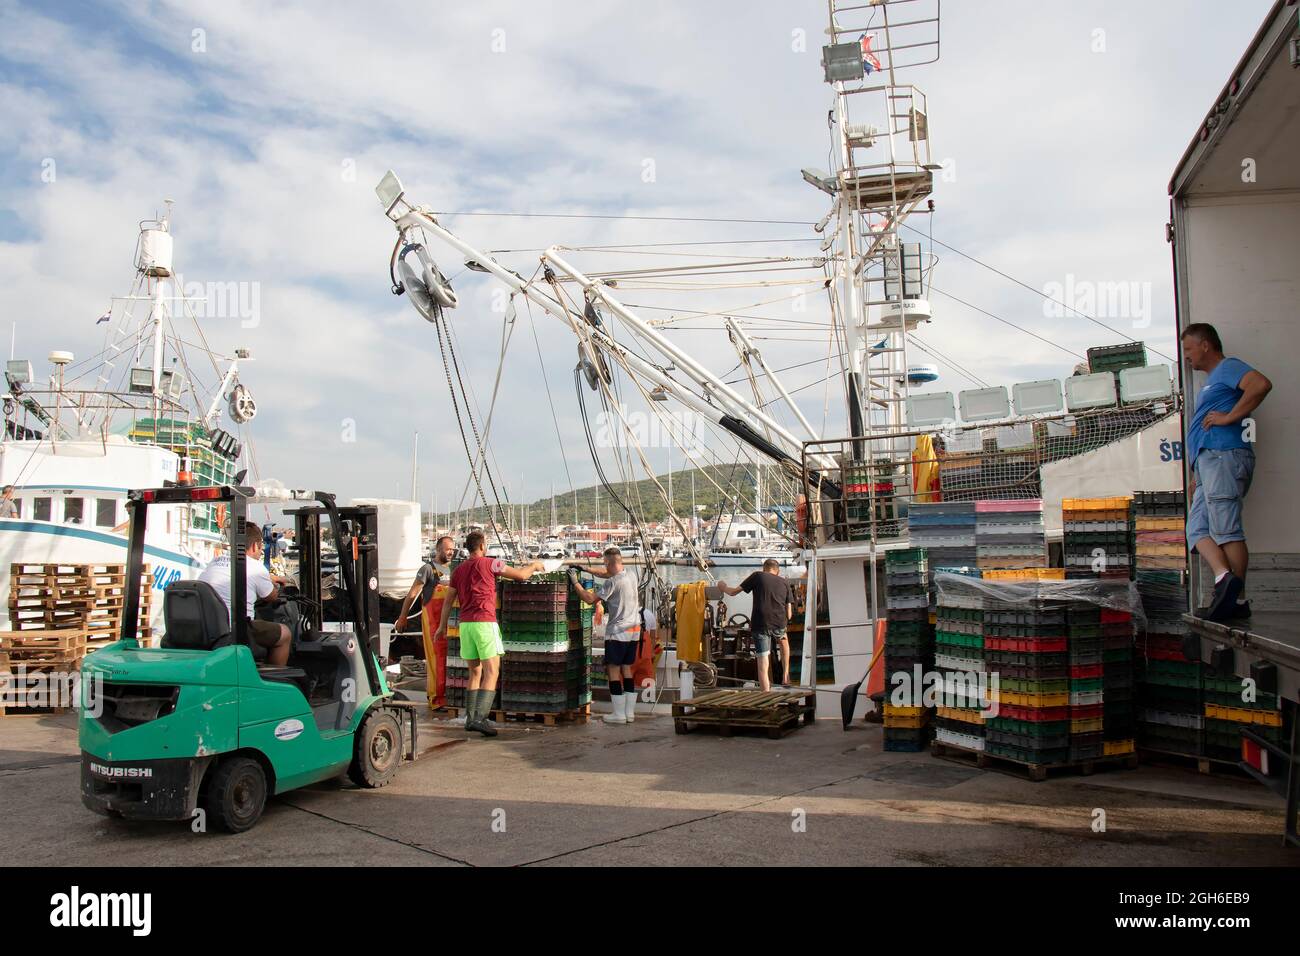 Tribunj, Croatie - 4 août 2021 : pêcheurs et travailleurs de quai chargeant des conteneurs à poisson et des caisses dans un camion à l'aide de grues à bateaux et d'un chariot élévateur à fourche Banque D'Images